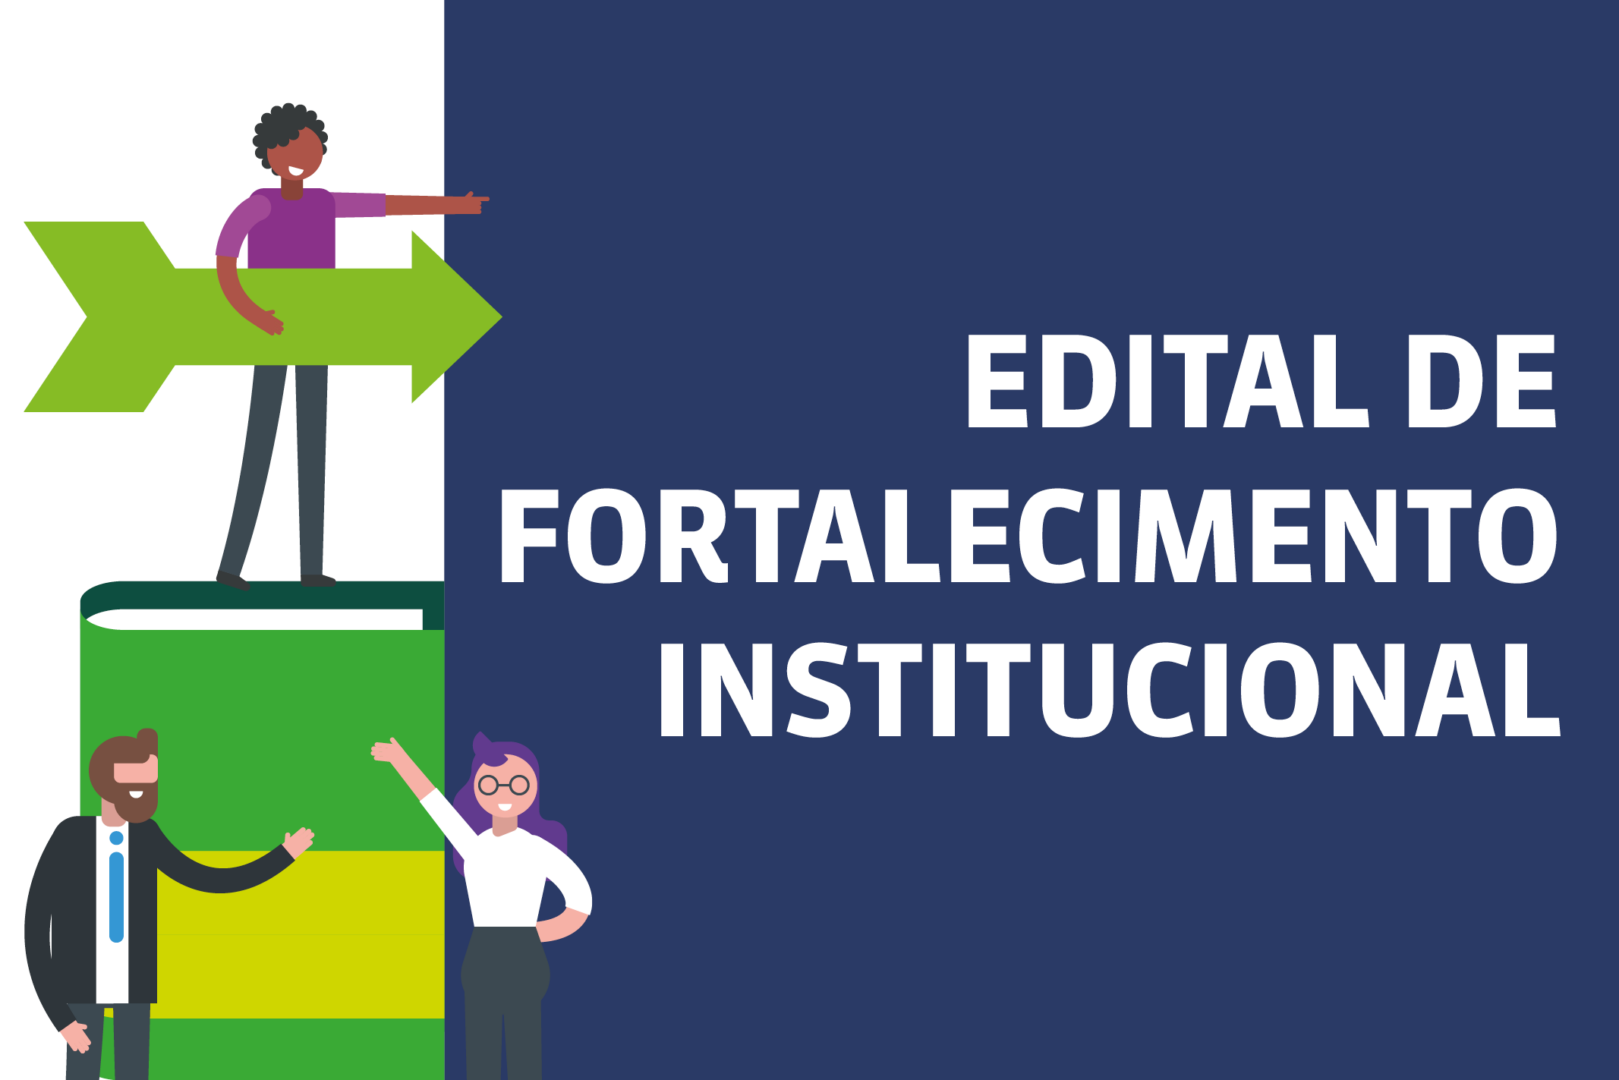 Instituto Unibanco prorroga período de inscrições para Edital de Fortalecimento Institucional até 11 de dezembro